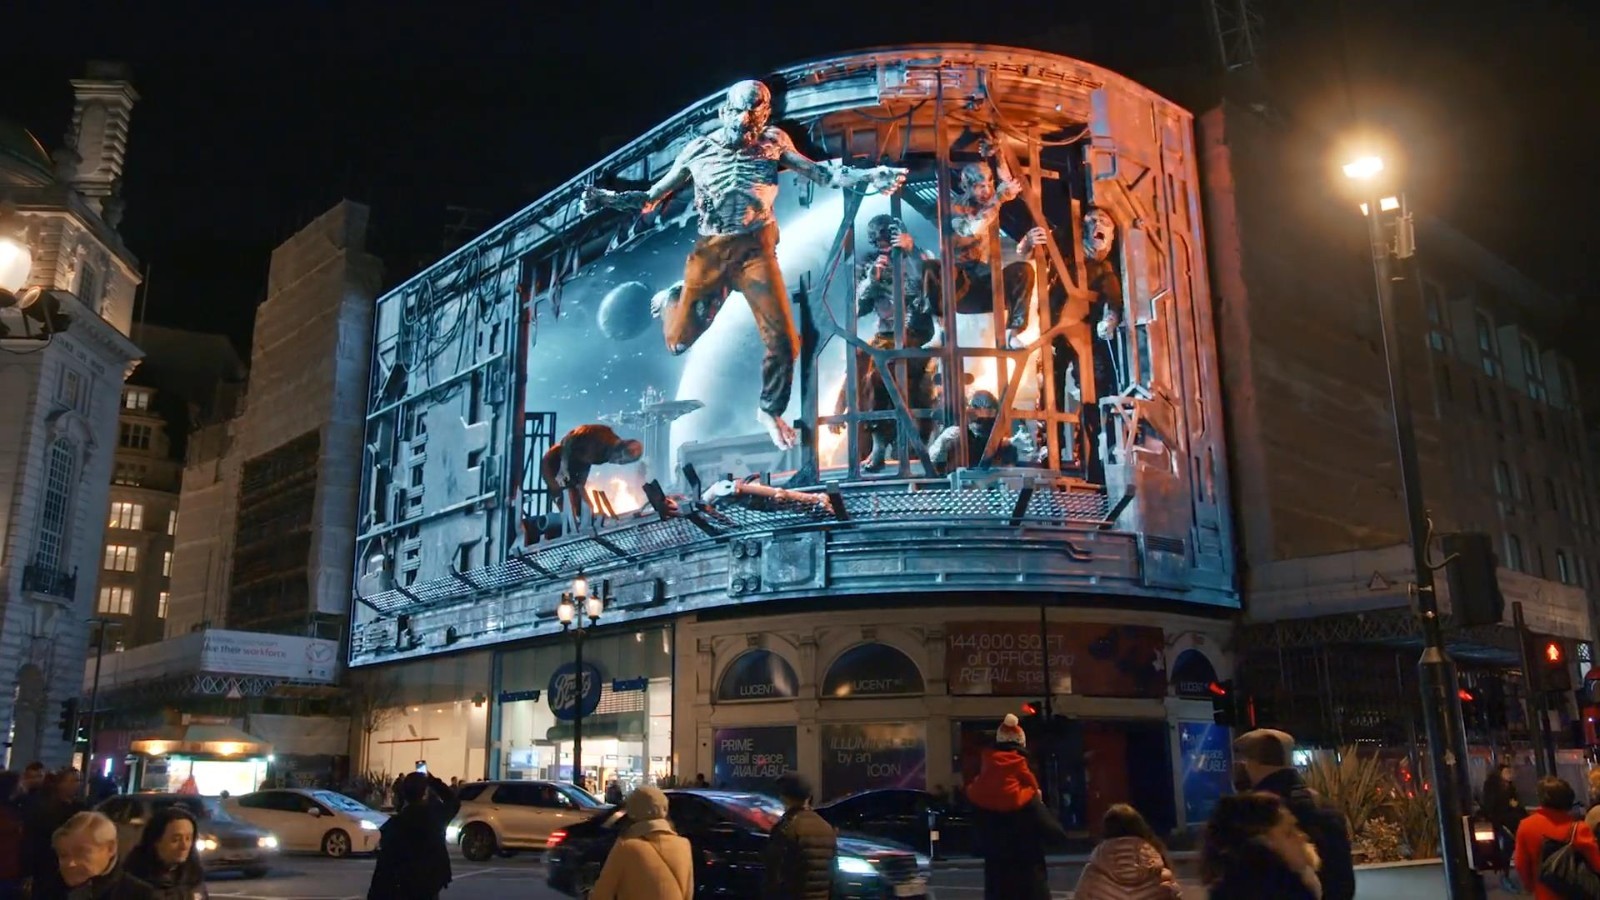 《木卫四协议》3D街头广告 怪物扑面而来路人吓尿-第6张